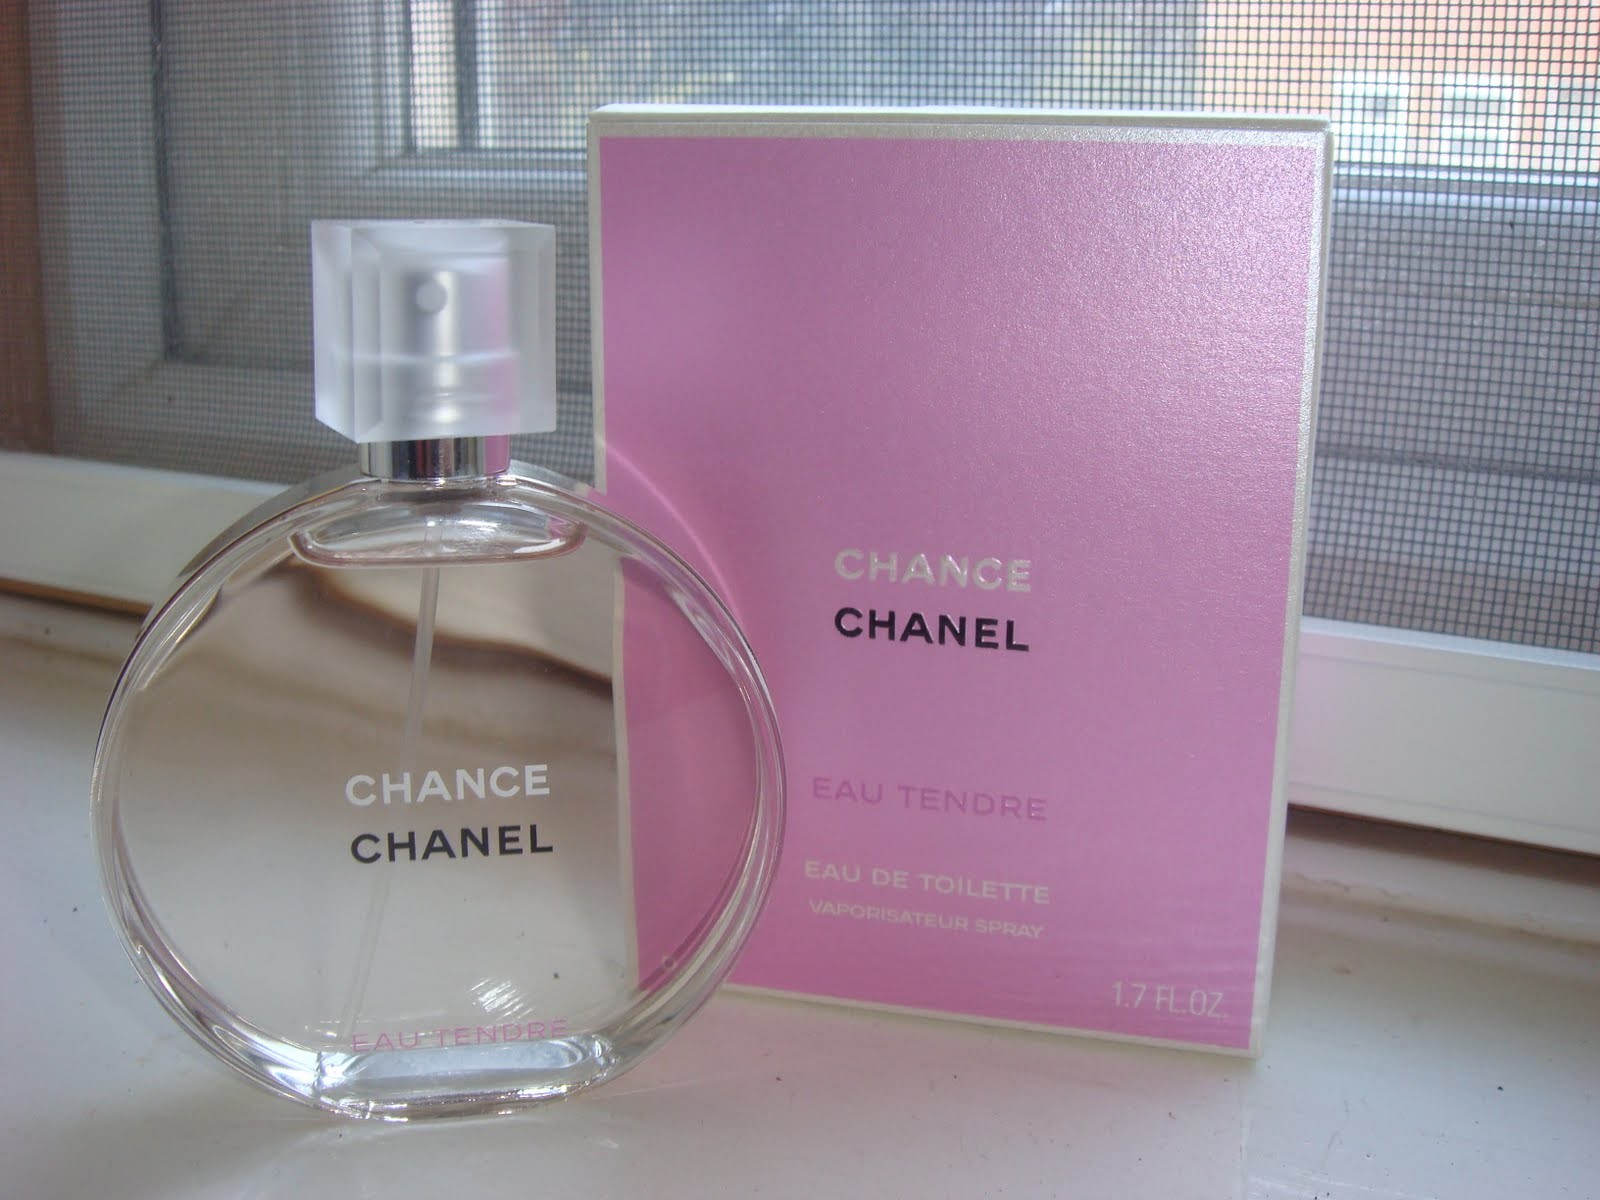 Nước hoa nữ Chanel chính hãng hương thơm nhẹ nhàng